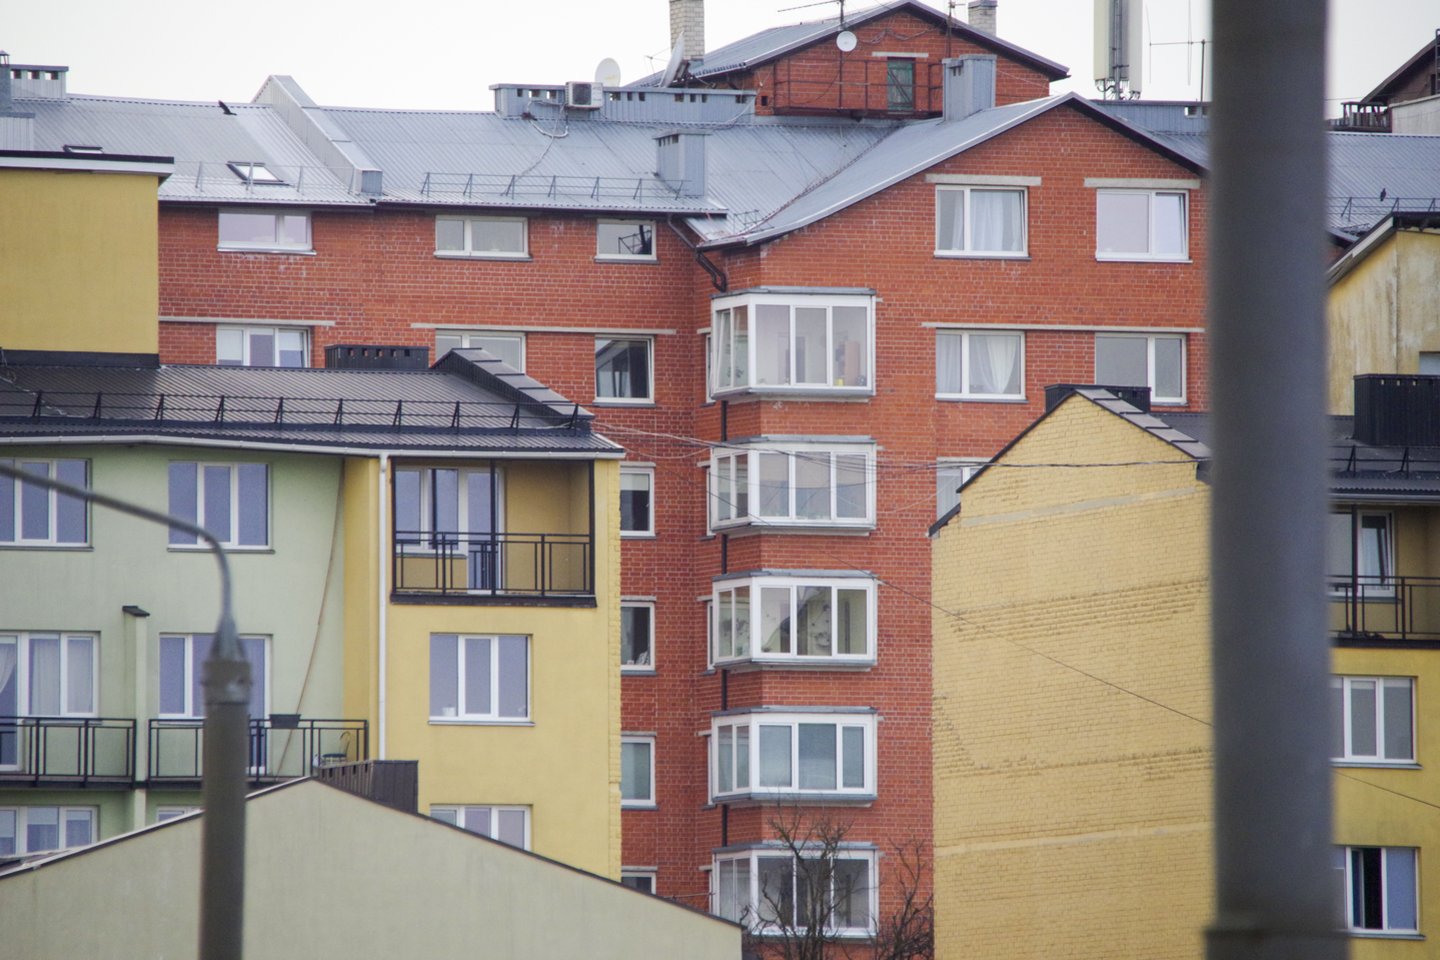 Per rugpjūčio mėn. Vilniuje vidutinė butų kaina padidėjo 1,9 proc.<br>V.Ščiavinsko nuotr.